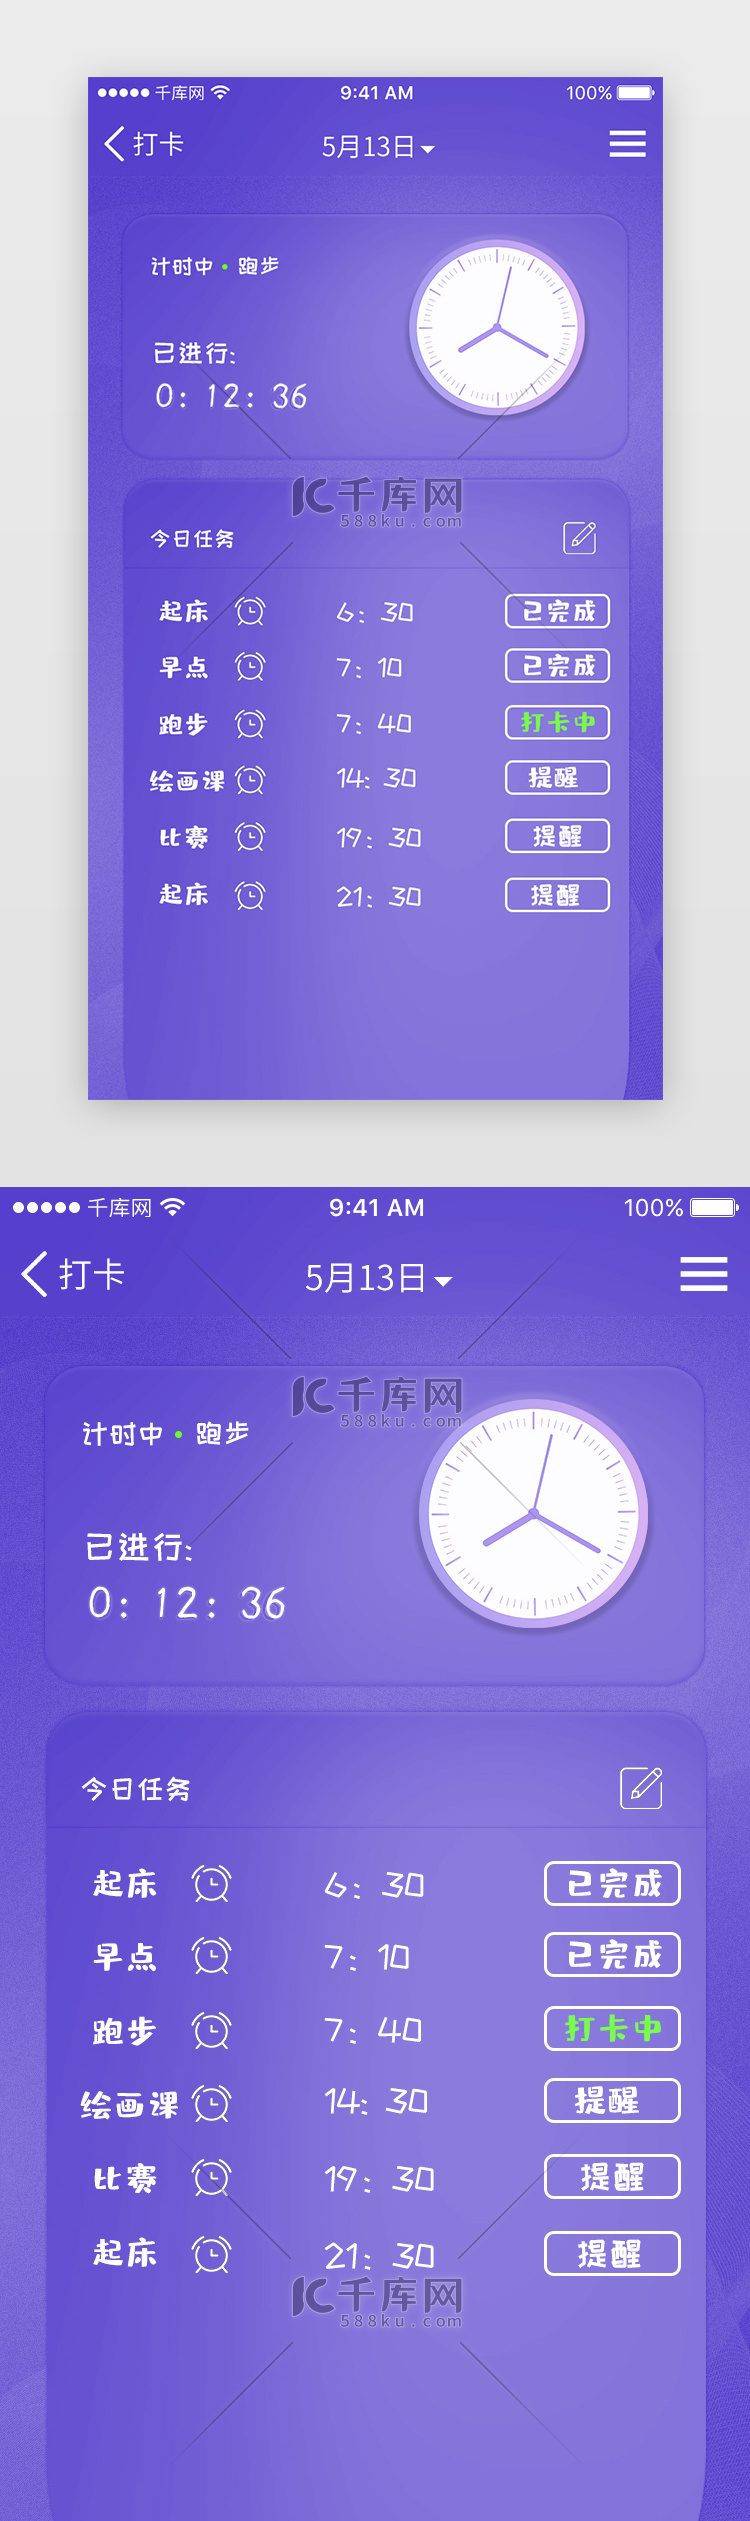 简约蓝紫色渐变日常生活打卡时间表界面设计